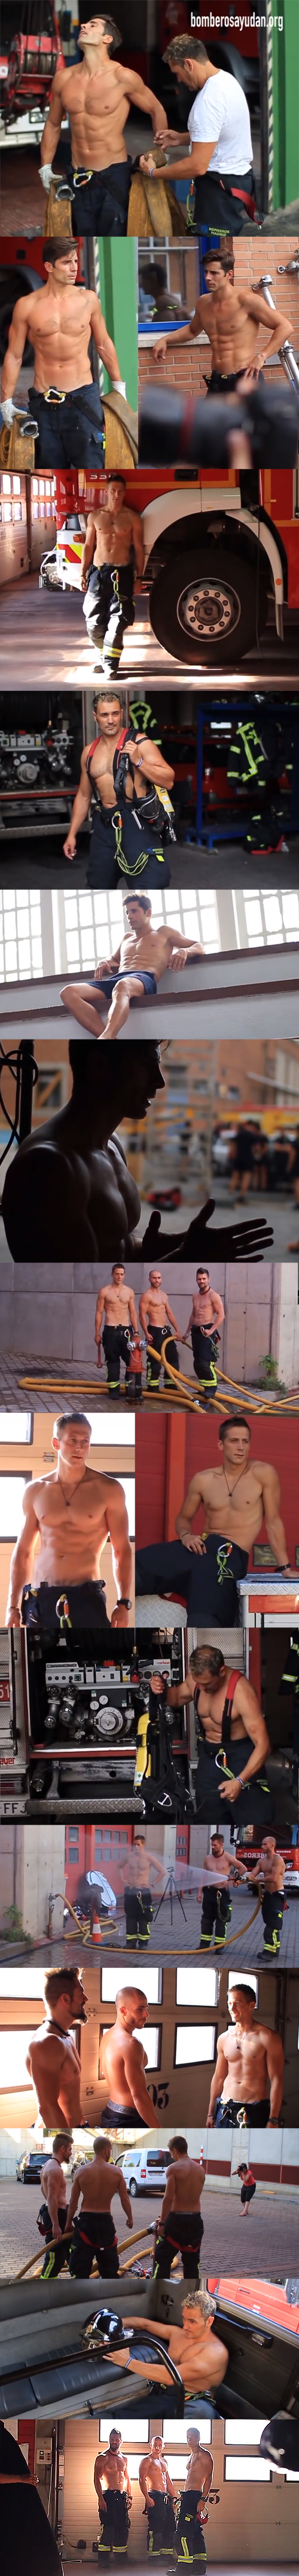 Los bomberos de Madrid también se desnudan